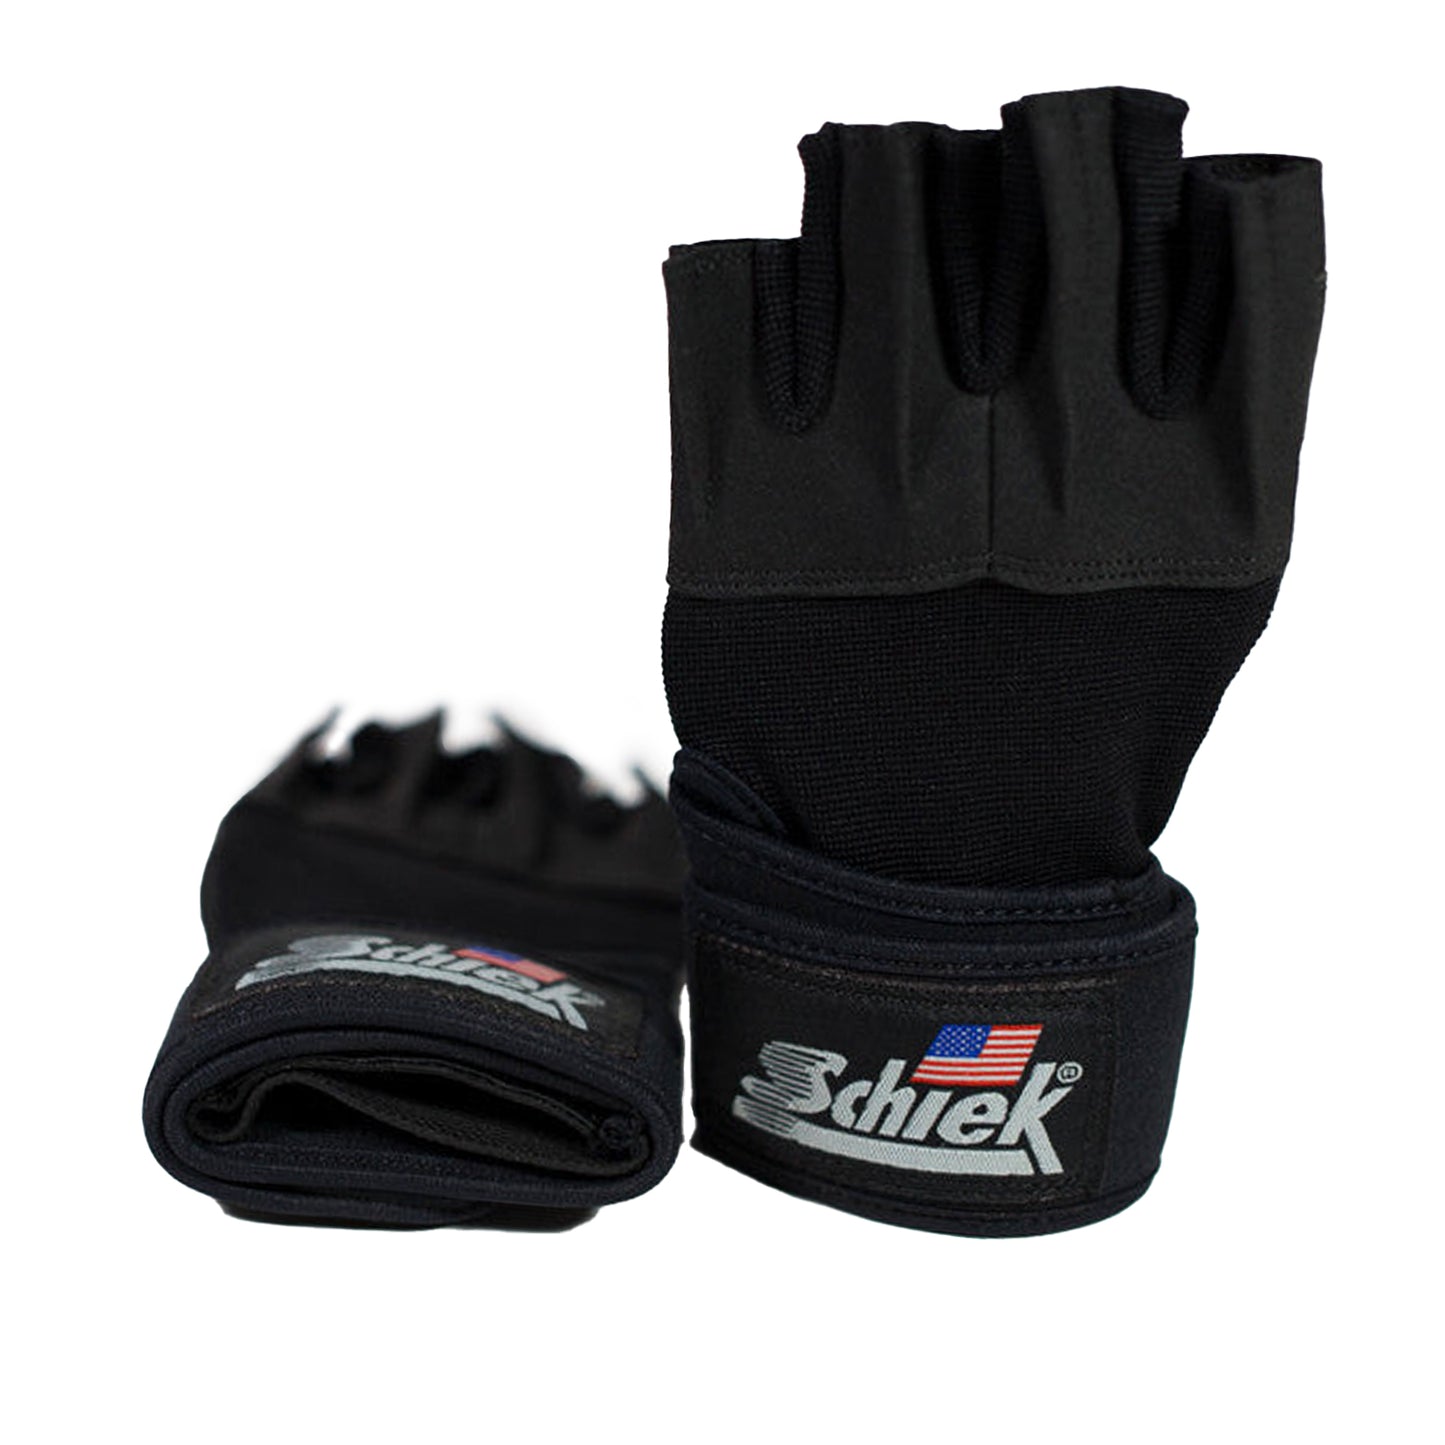 https://jaycutler.com/cdn/shop/products/20220215_LI_Schiek_Lifting_Gloves.jpg?v=1644964759&width=1445